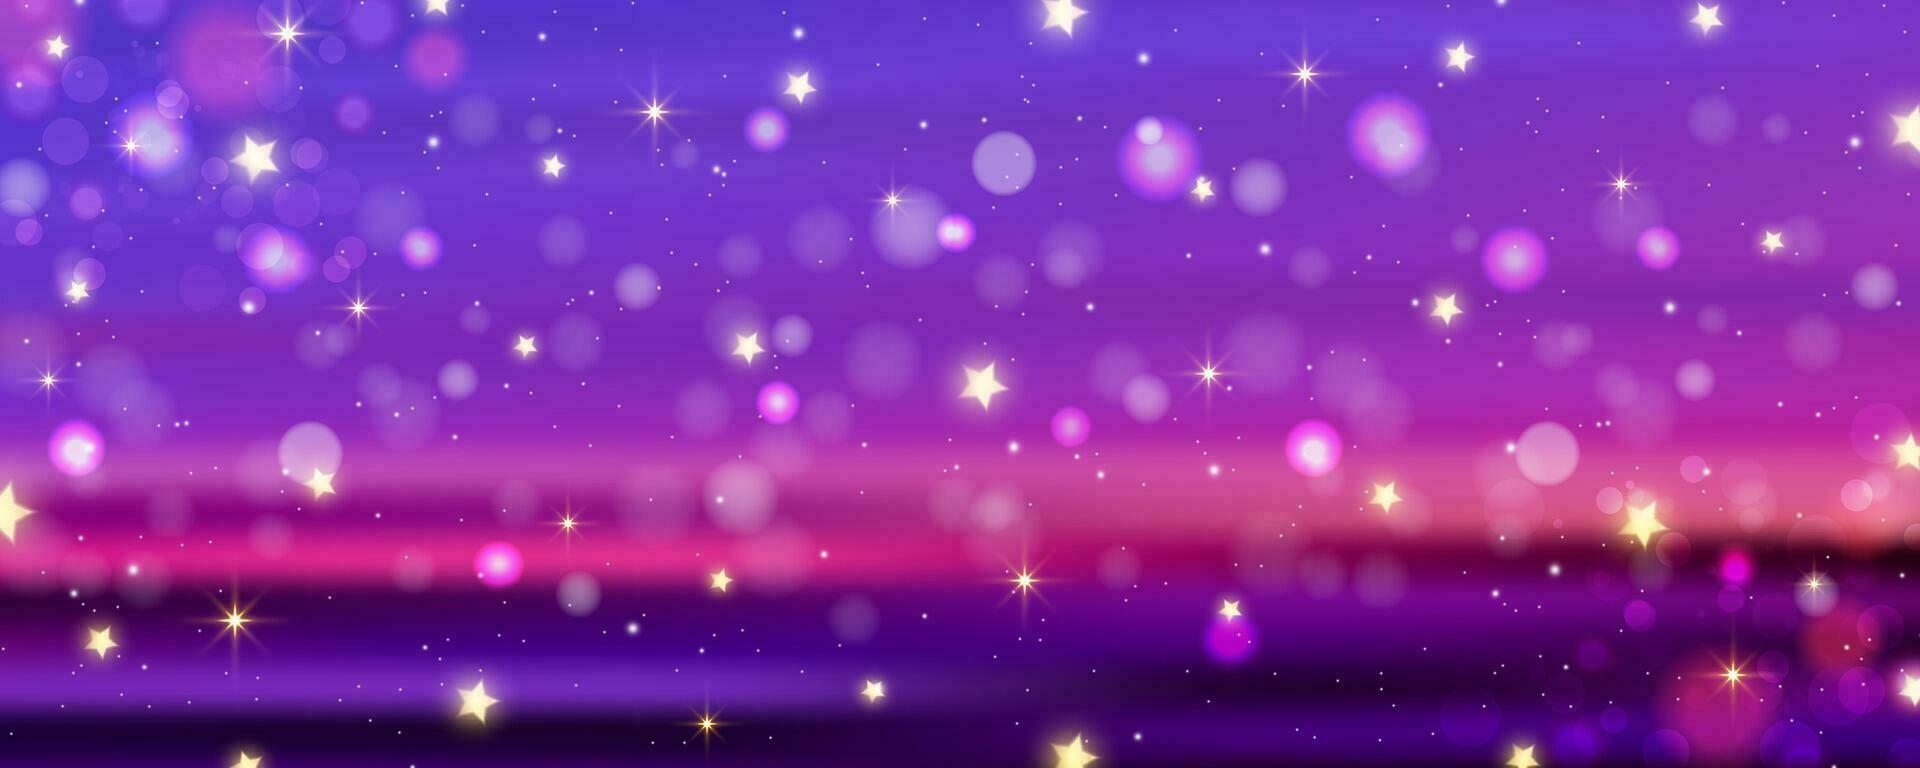 lila bakgrund med bokeh och glitter. gyllene glitter och stjärnor pärlar på pinky natt himmel. ljus glöd drömma tapet. vektor illustration